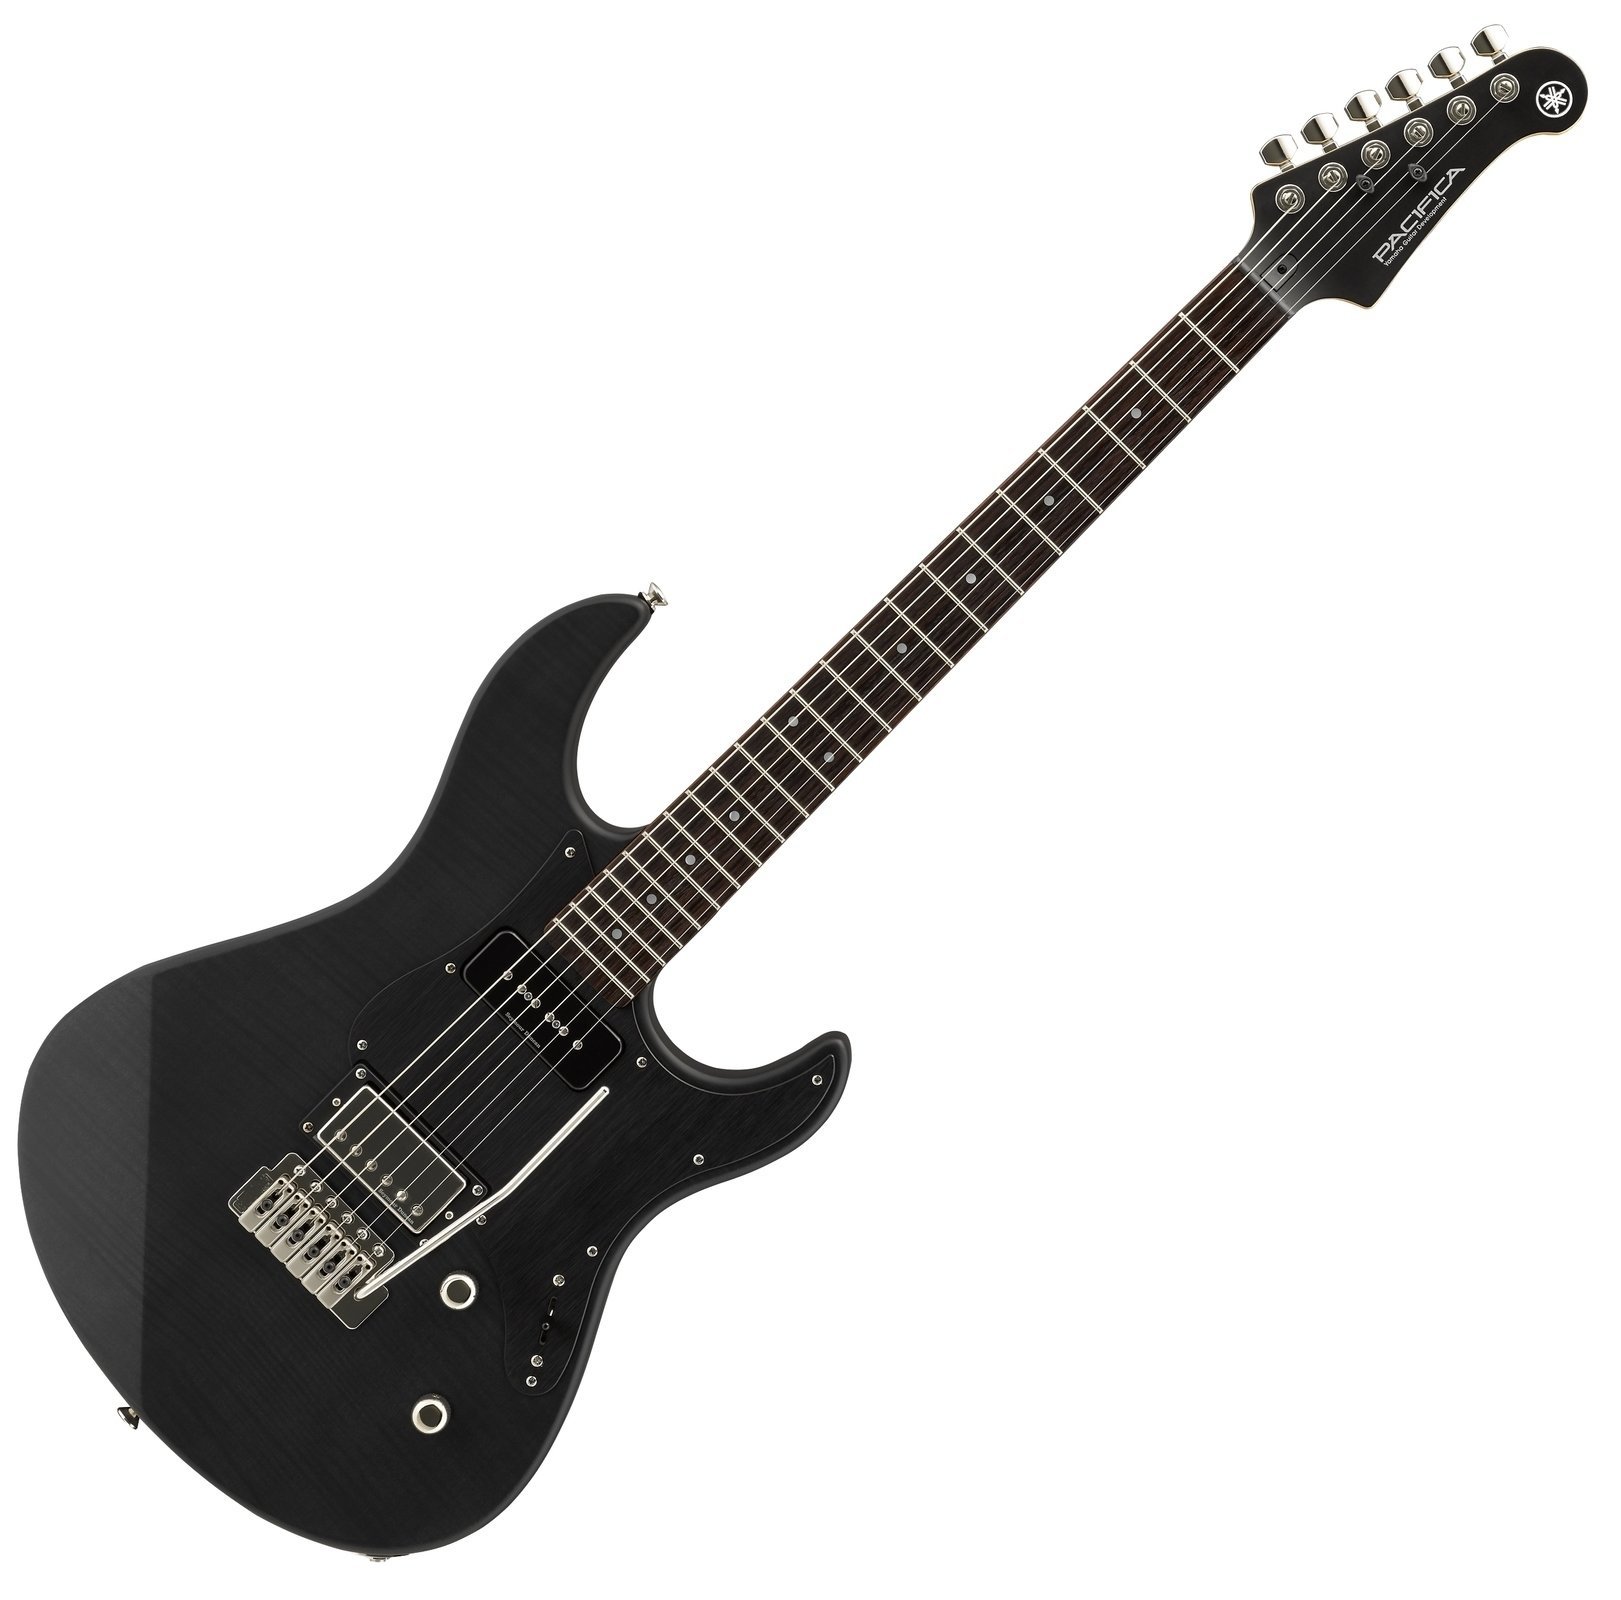 Electric guitar Yamaha Pacifica 611VFMX TBL